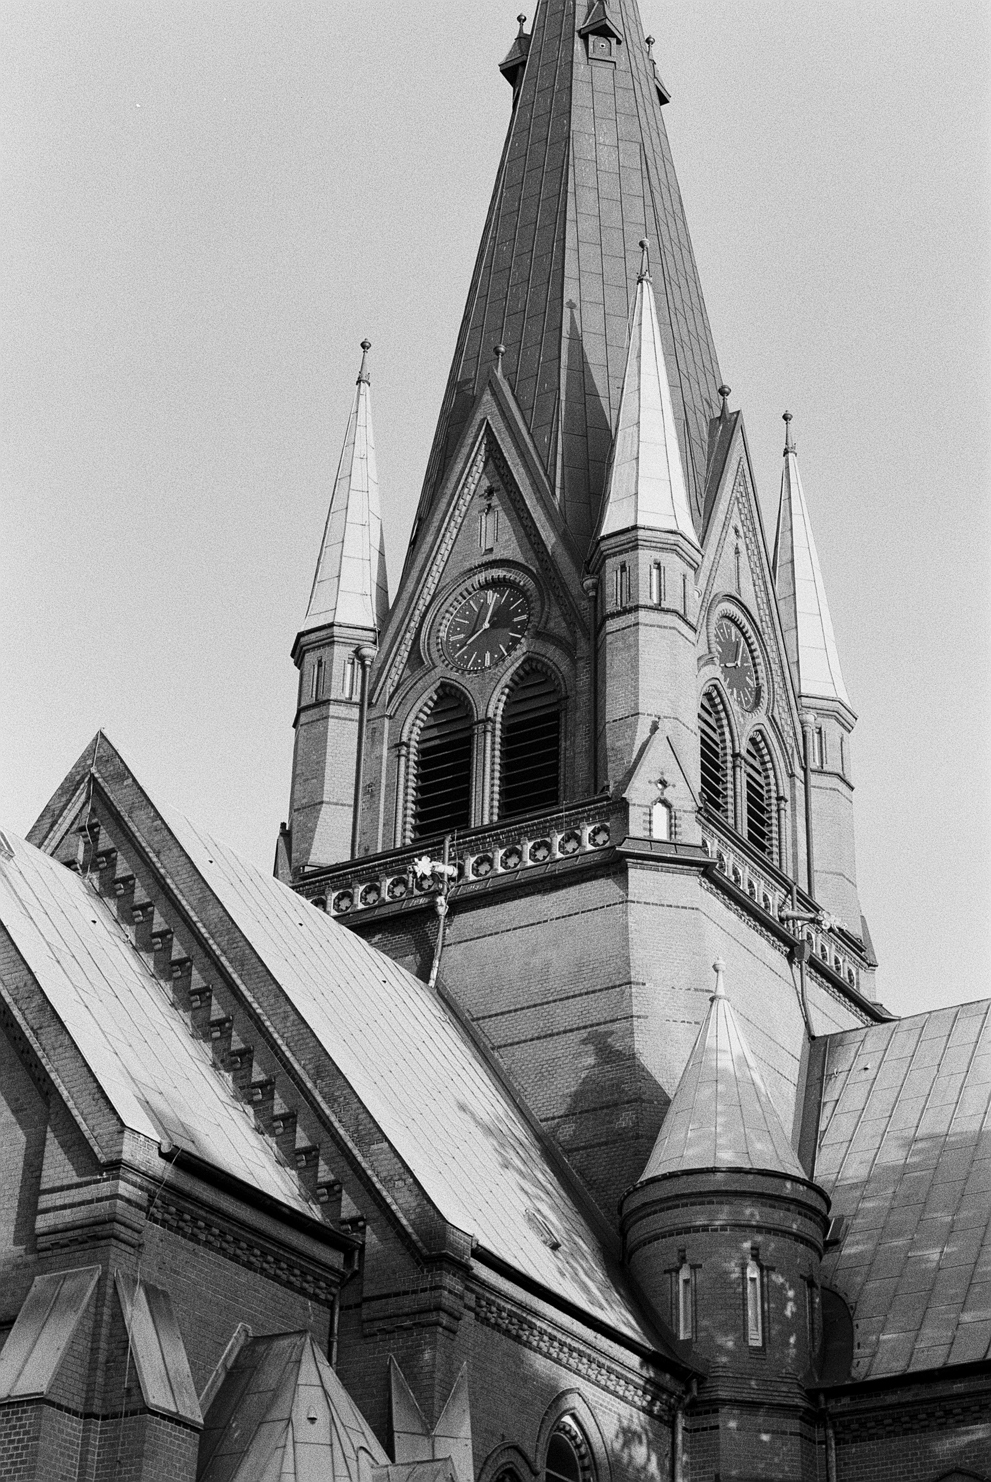 Kreuzkirche in Hamburg-Ottensen. Shot in Ilford Delta 400